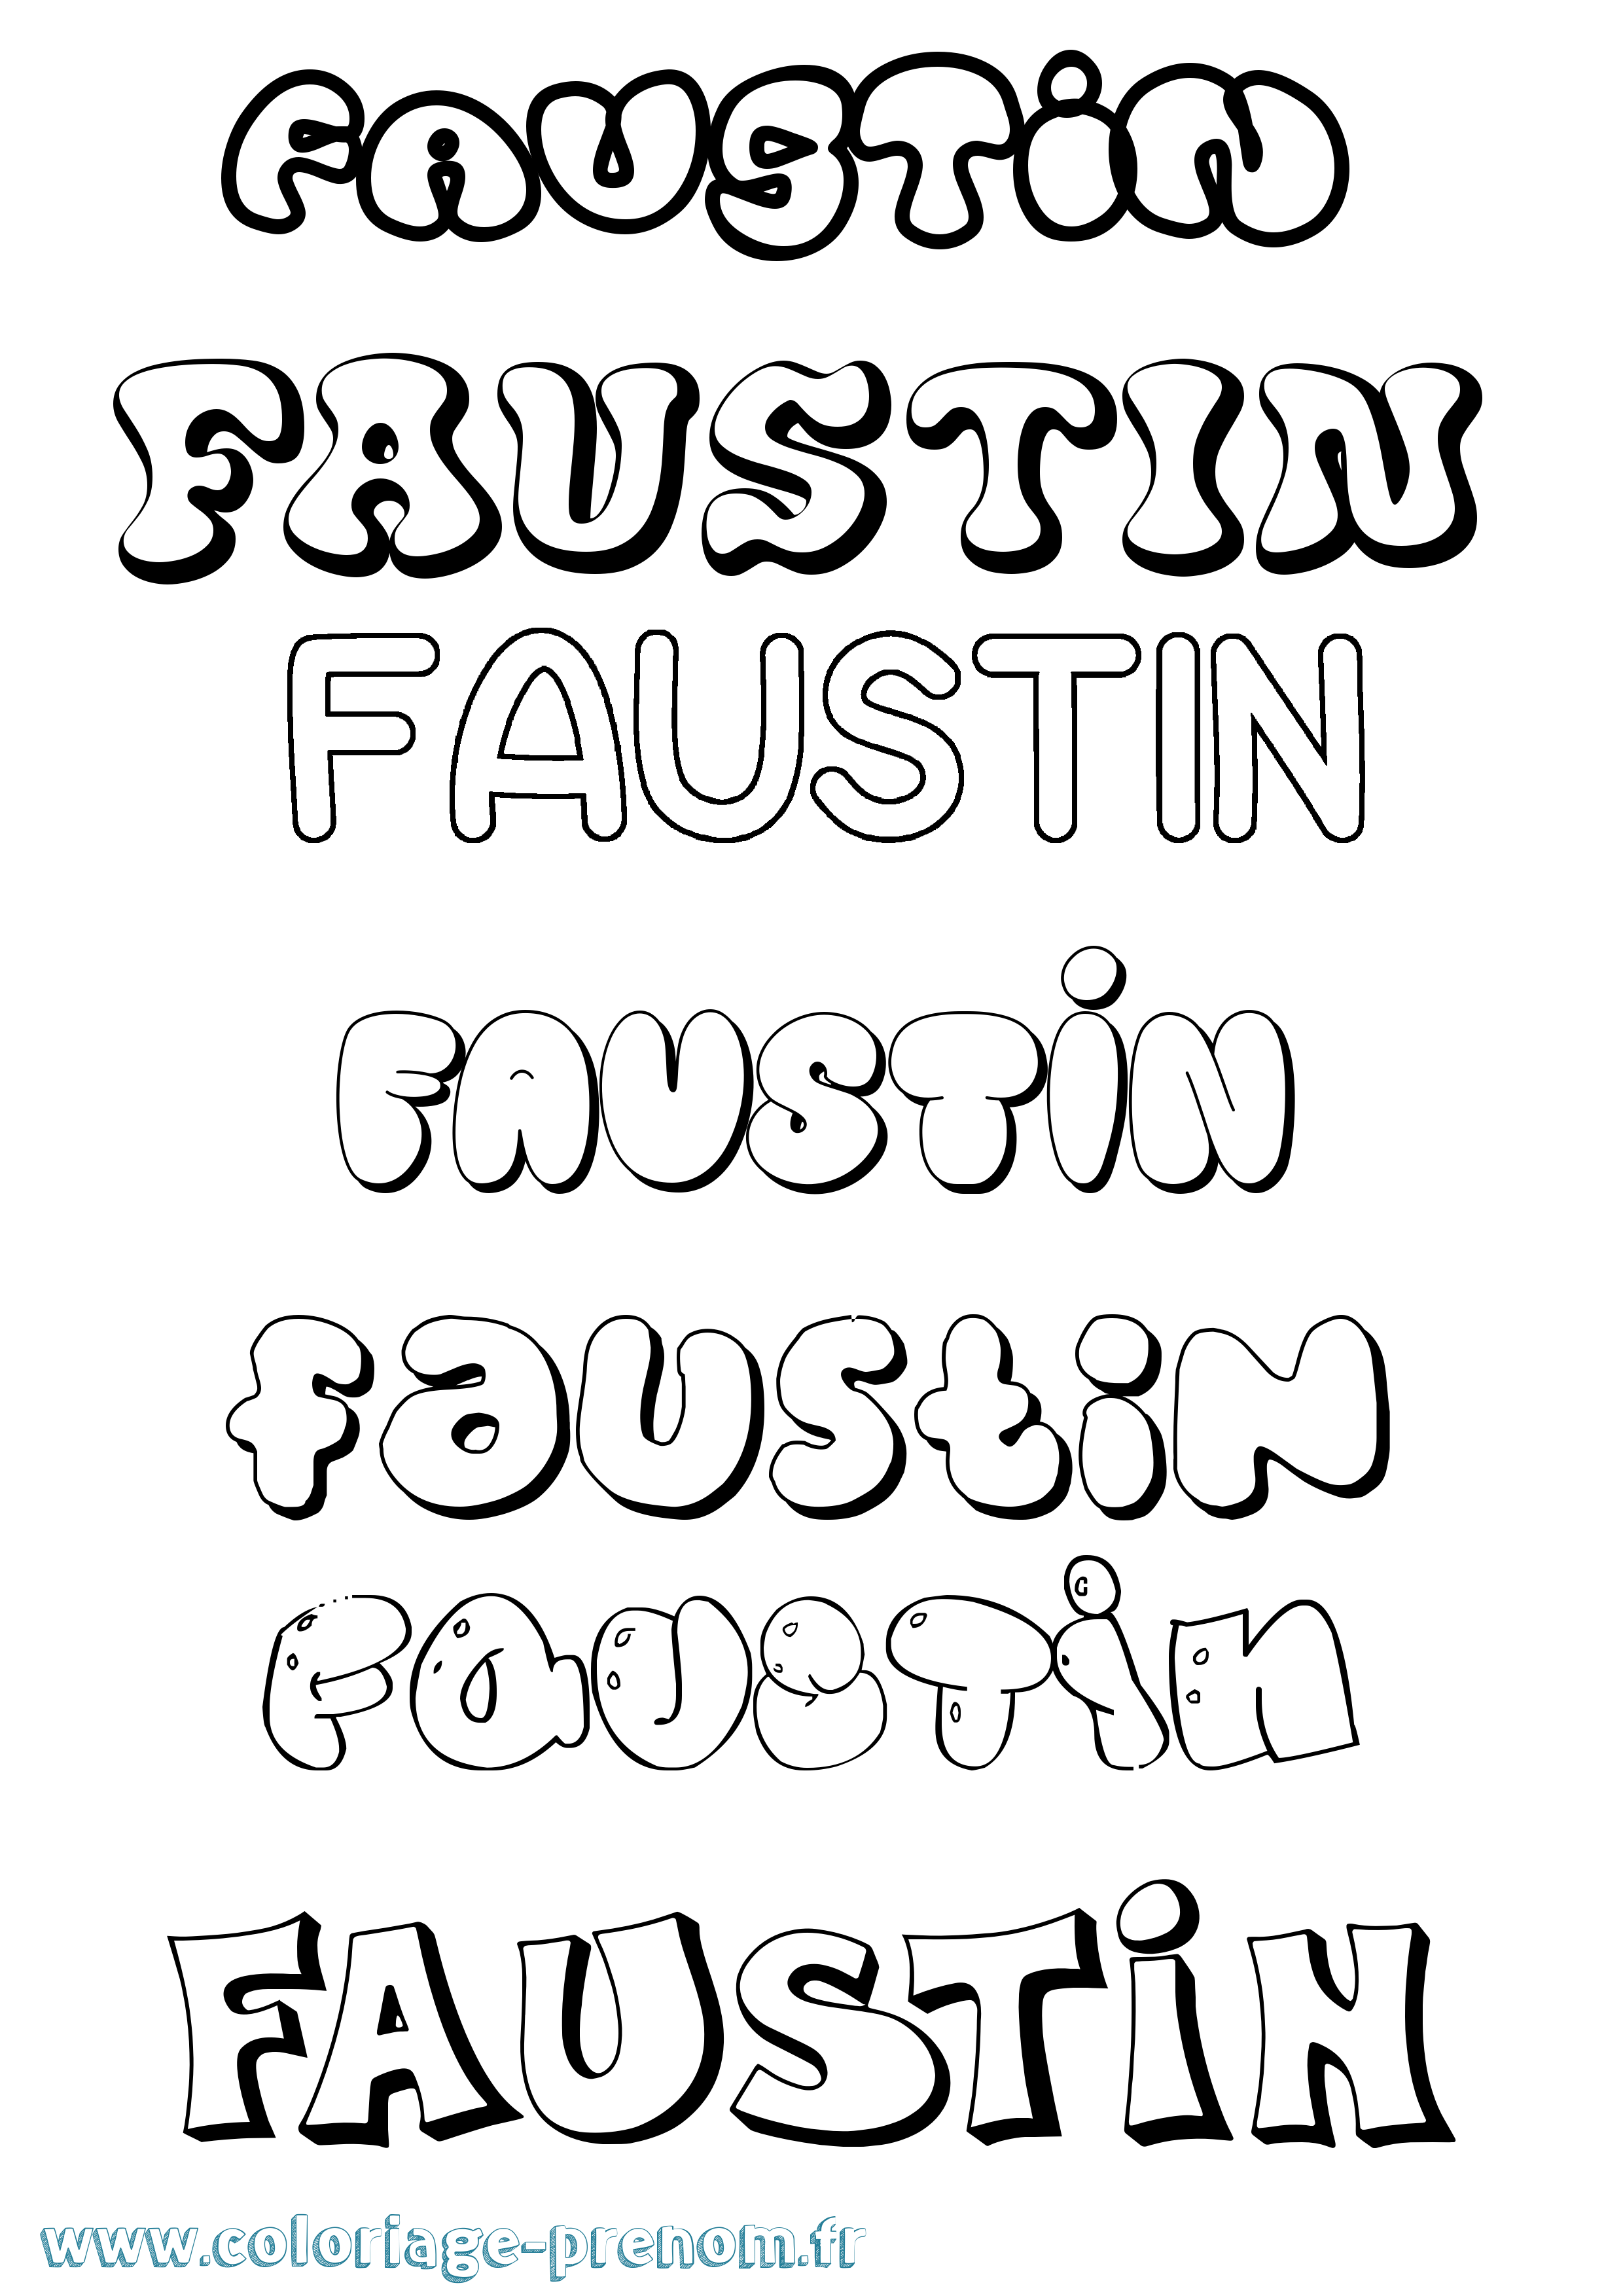 Coloriage prénom Faustin Bubble